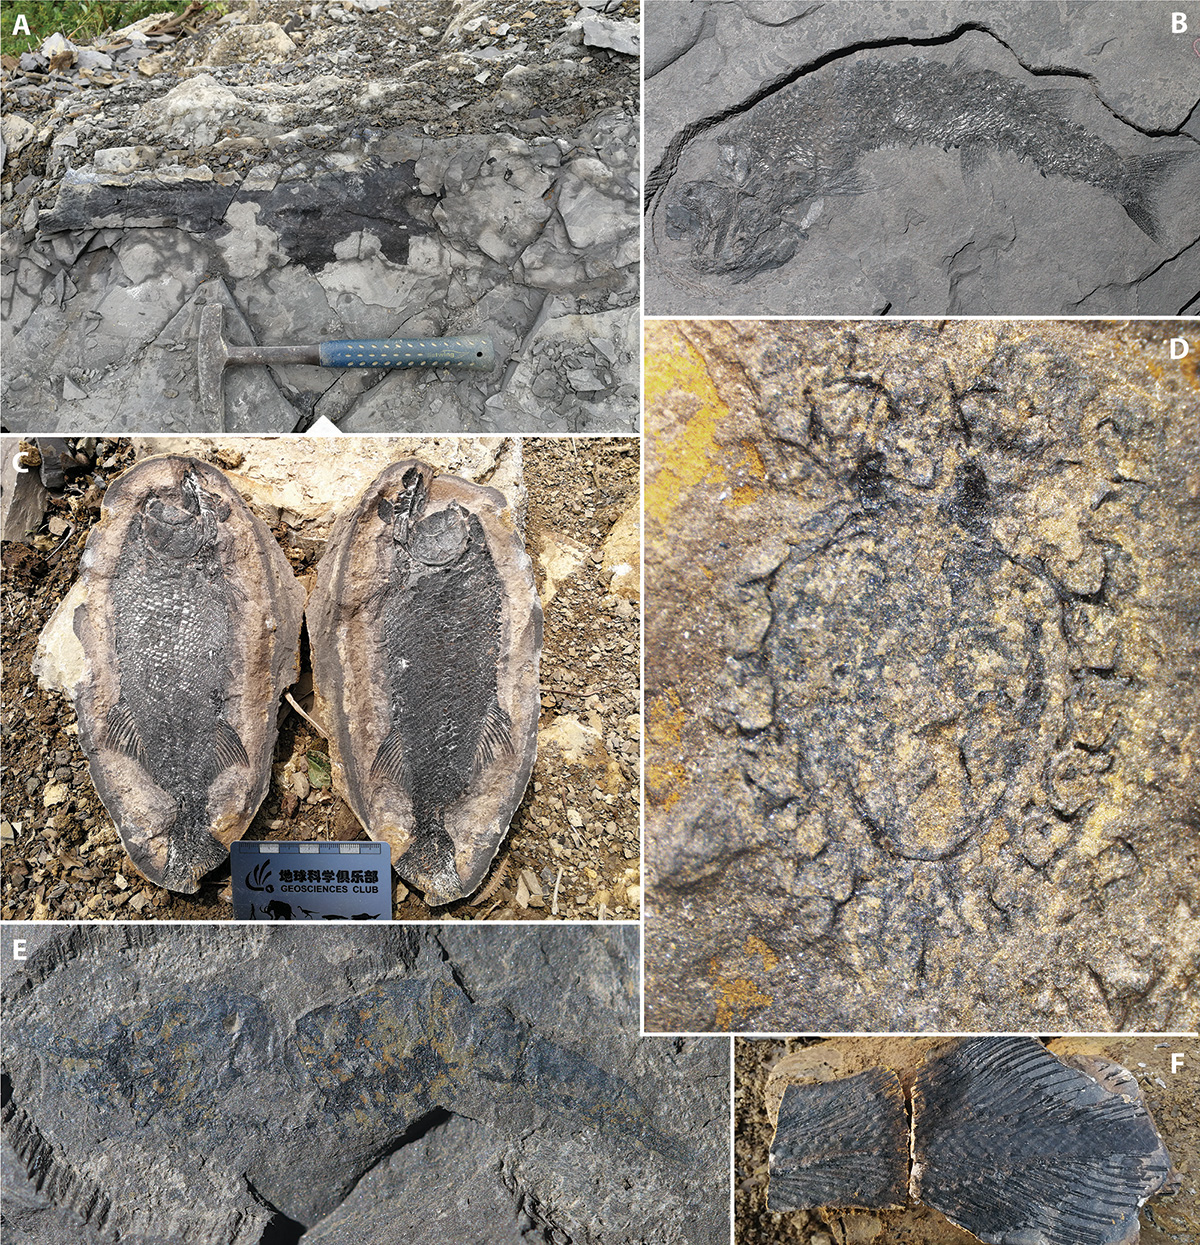 Quelques fossiles remarquables trouvés dans le Guiyang Biota (Guizhou, Chine du Sud), daté du Dienérien (~1 million d’années après l’extinction de masse Permien/Trias), Trias inférieur, et photographiés sur le terrain. A : poisson cœlacanthe indéterminé encore dans les niveaux fossilifères (taille du marteau ~30 cm) ; B :  poisson Teffichthys elegans (longueur ~20 cm) ; C : poisson Watsonulus sp. (longueur ~25 cm) extrait d’un nodule ; D : crustacé Cyclida (longueur ~1.5 cm) ; E : crevette Aegearidae (longueur ~2 cm)  ; F : nageoire caudale de poisson cœlacanthe (longueur ~20 cm). Photos X. Dai.